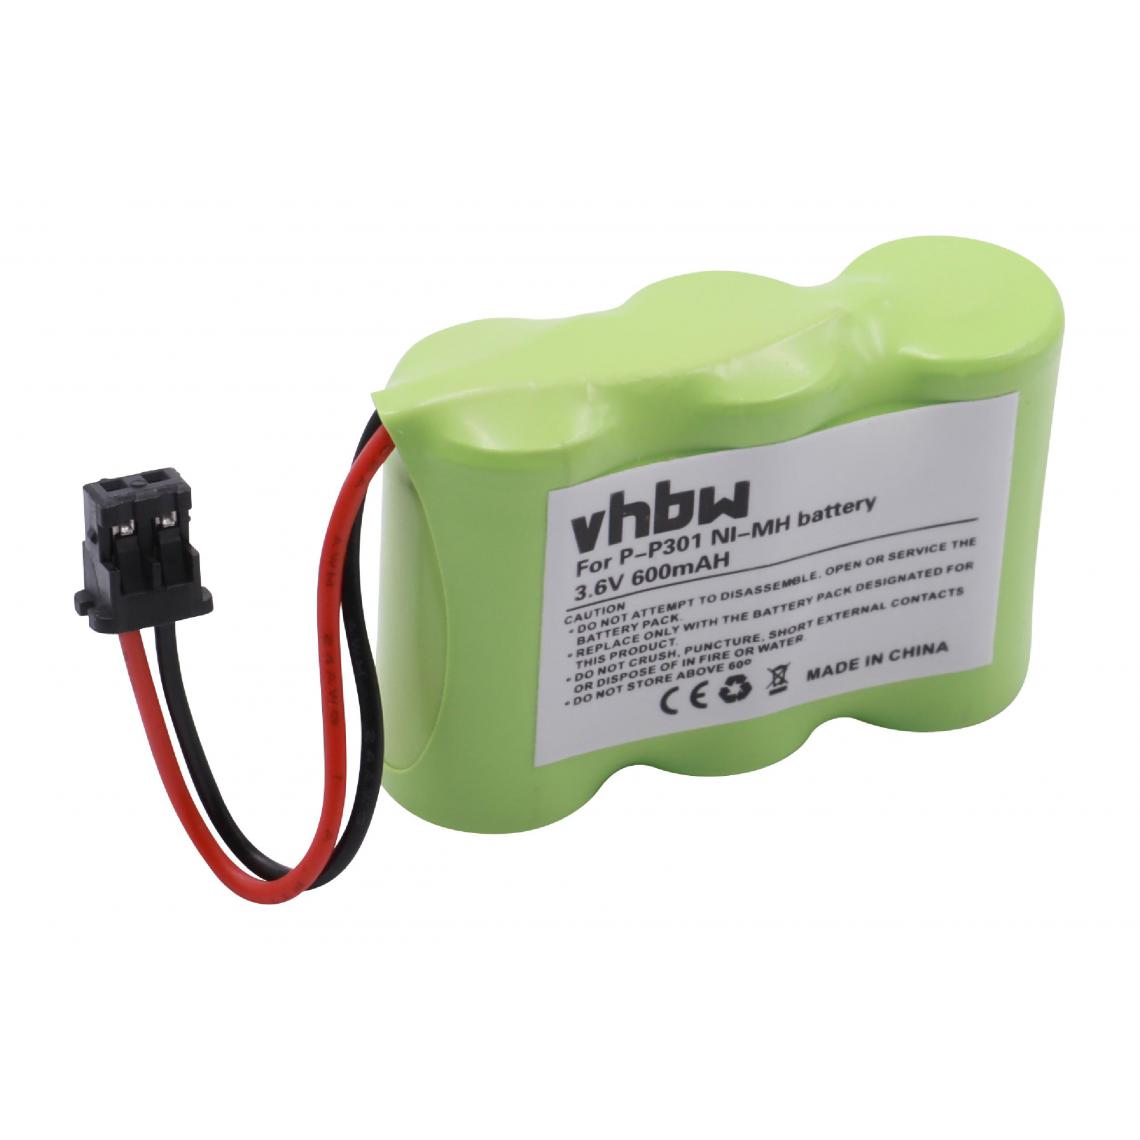 Vhbw - vhbw Batterie compatible avec Sony SPPQ150, SPPQA500, ST250 téléphone fixe sans fil (600mAh, 3,6V, NiMH) - Batterie téléphone